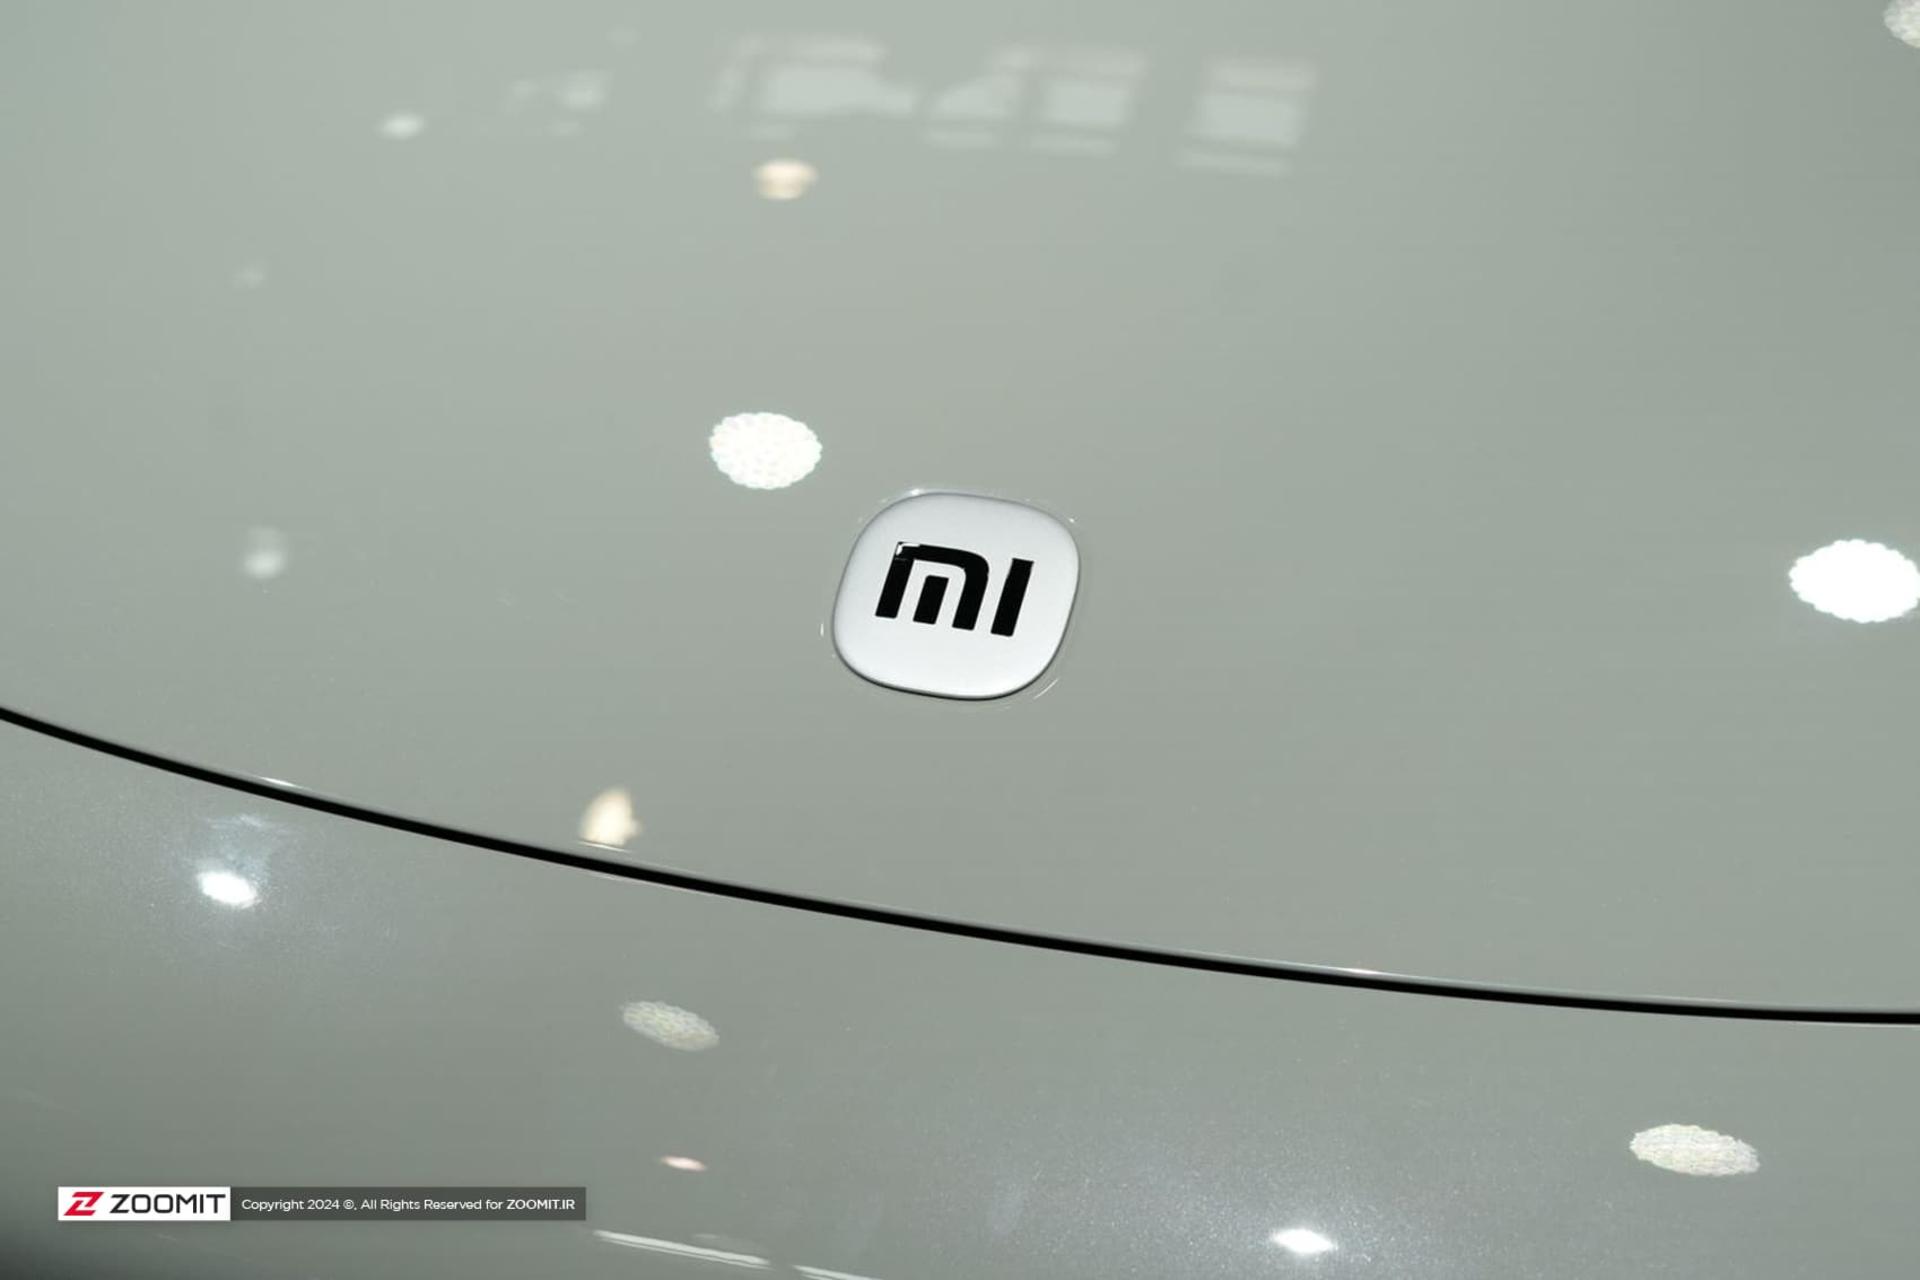 لوگو شیائومی / Xiaomi روی بدنه خودرو SU7 Max